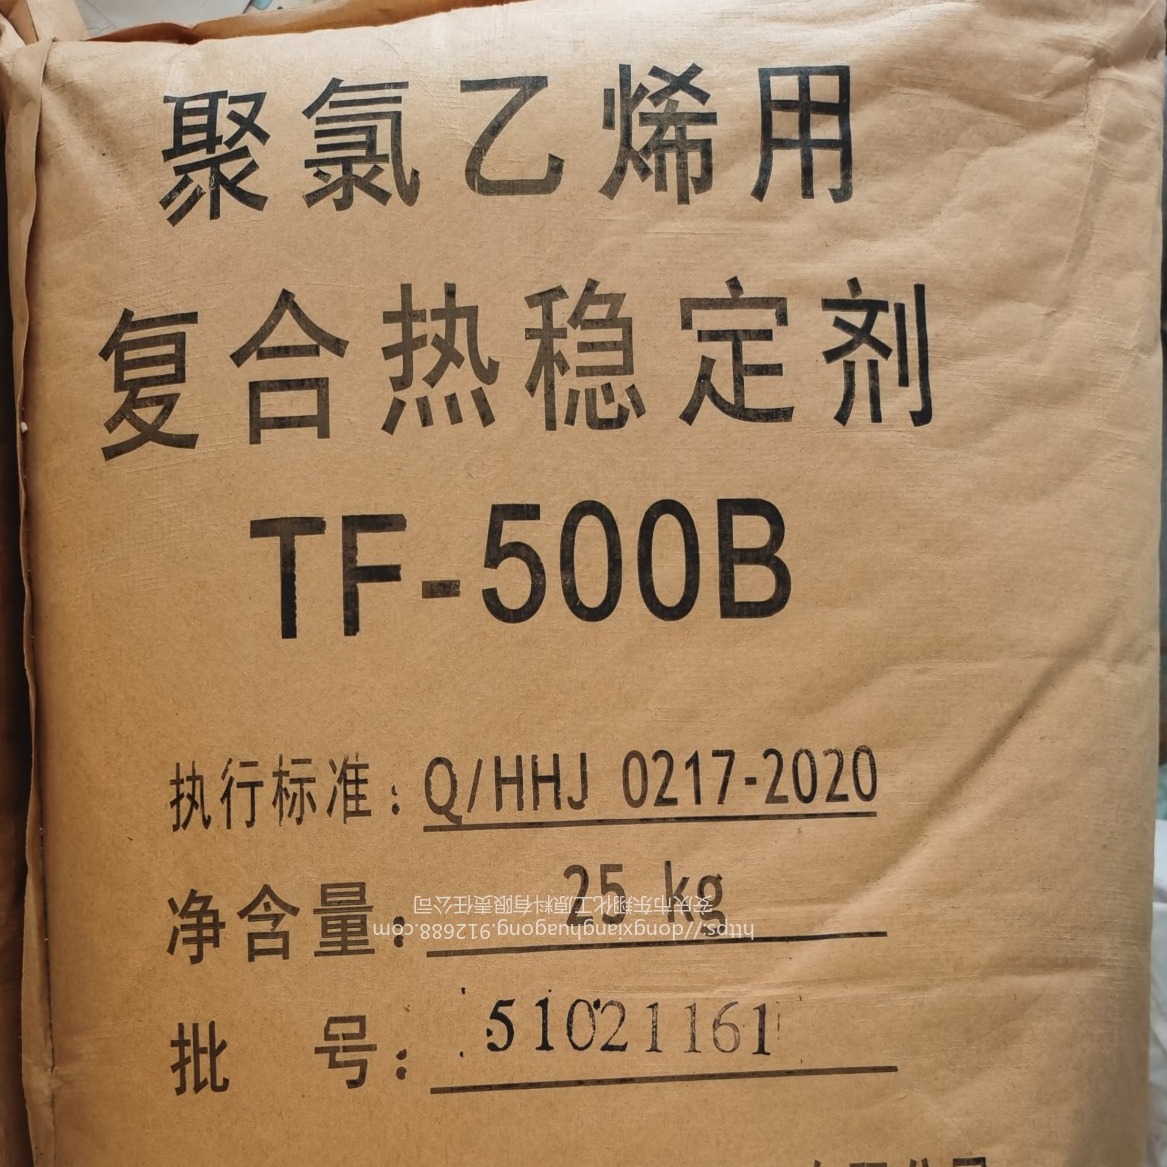 复合稳定剂 浙江传化聚氯乙烯PVC用热稳定剂  TF-500B